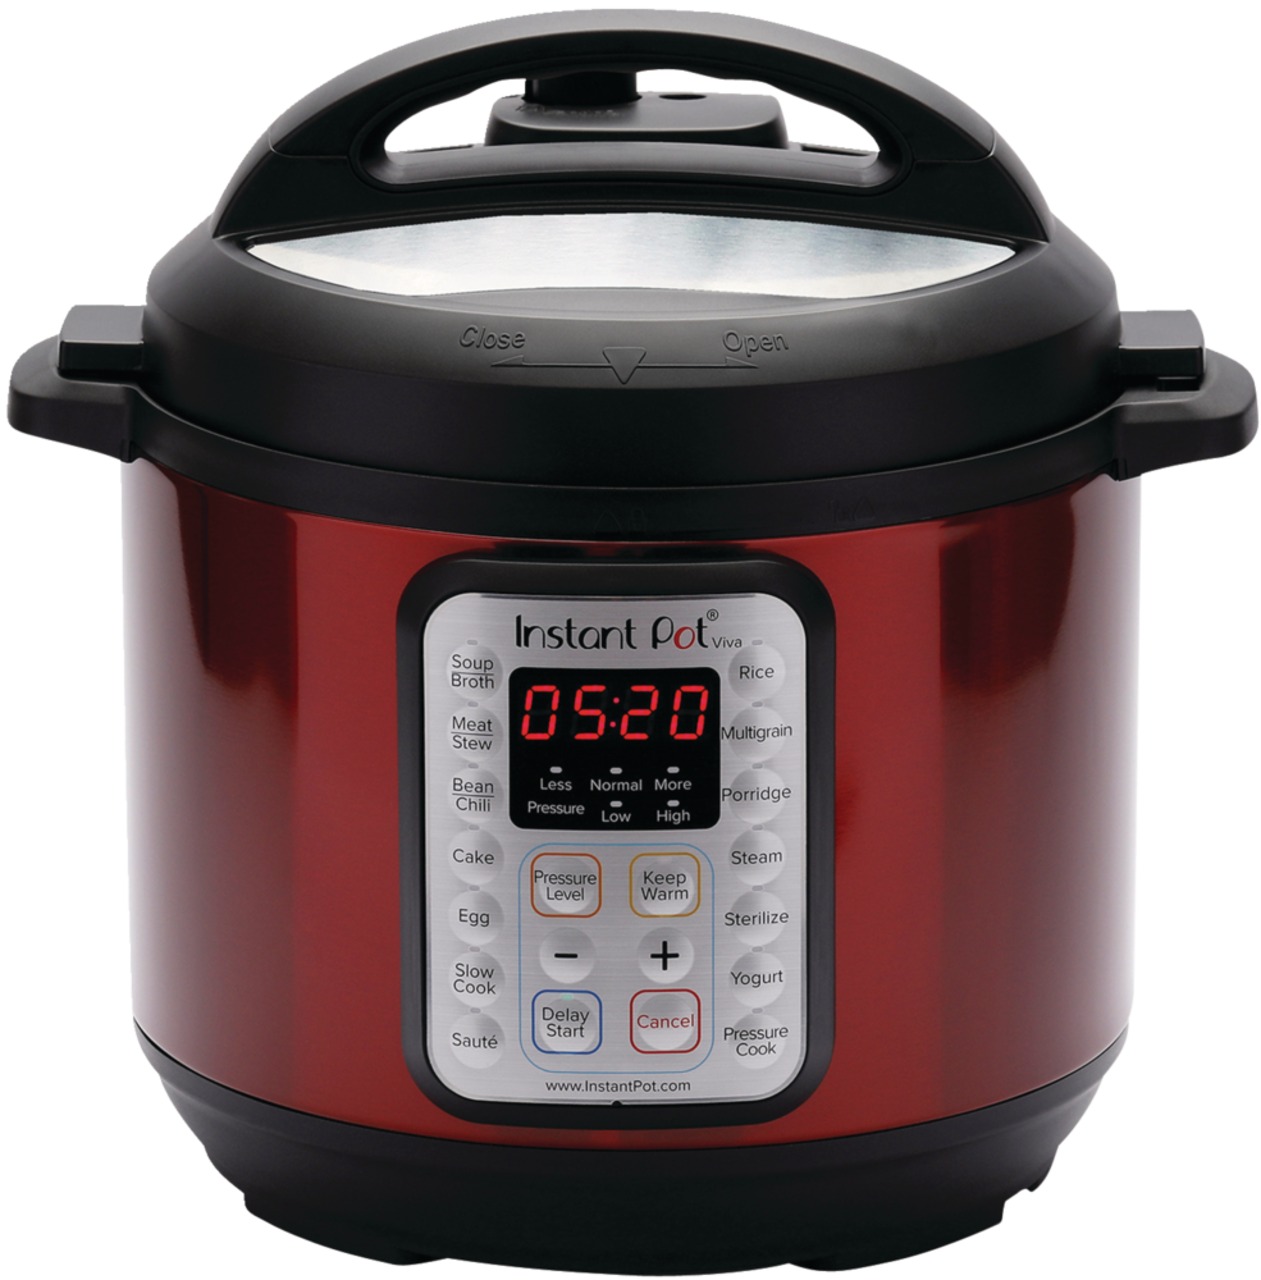 Instant Pot Viva Black Stainless 8-Quart 9-in-1 Multi-Use Programmable Pressure Cooker, Slow Cooker, Rice Cooker, Yogurt Maker